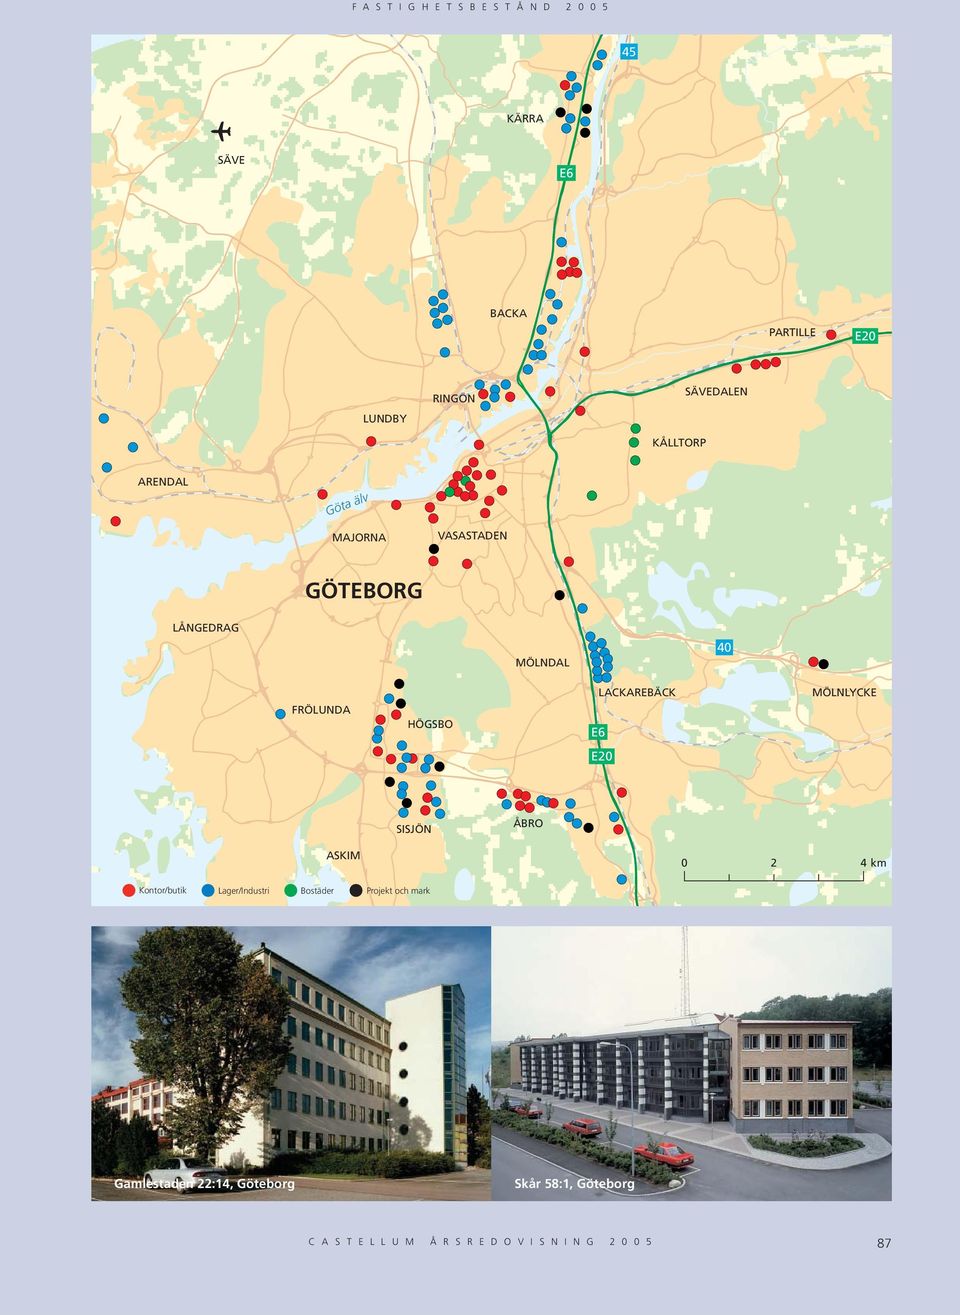 MÖLNLYCKE E20 SISJÖN ÅBRO ASKIM 0 2 4 km Lager/Industri Bostäder Projekt och mark